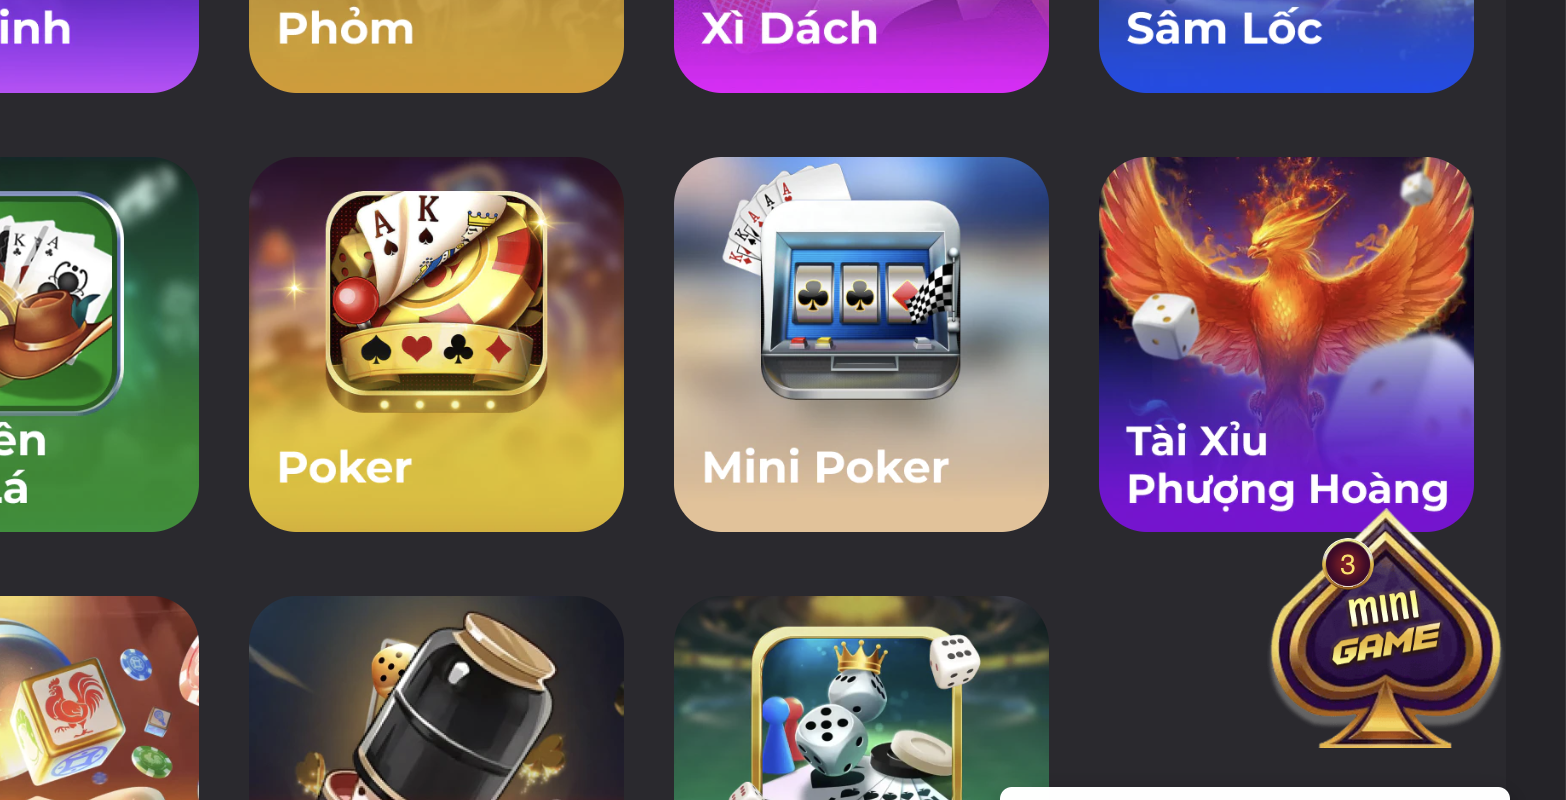 Mini Poker là thể loại game được nhiều anh em lựa chọn